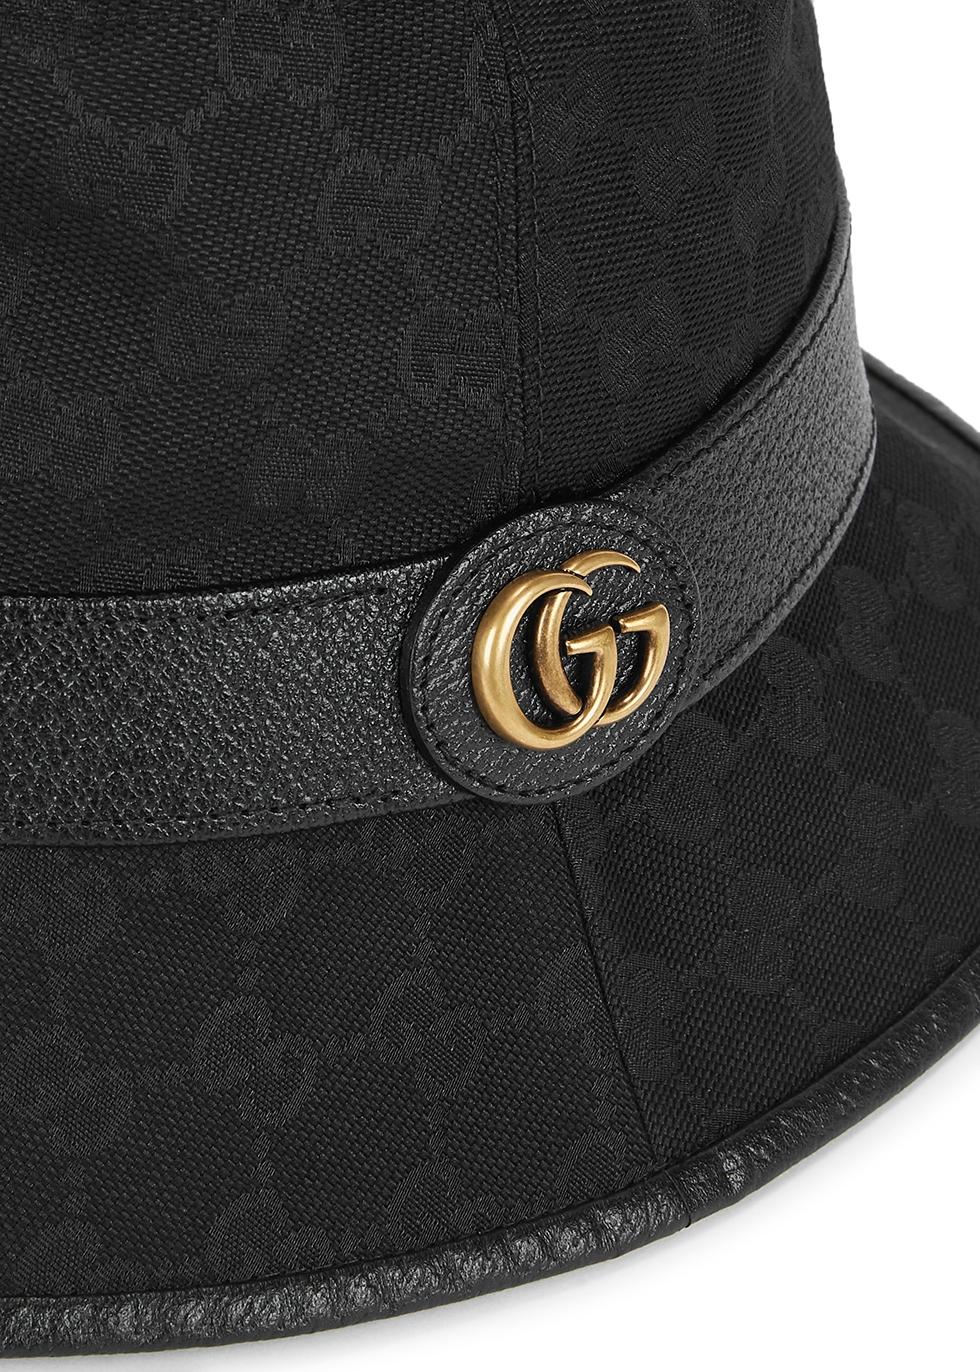 Authentic Gucci Bucket Hat “Original Black men, women, unisex. size M 